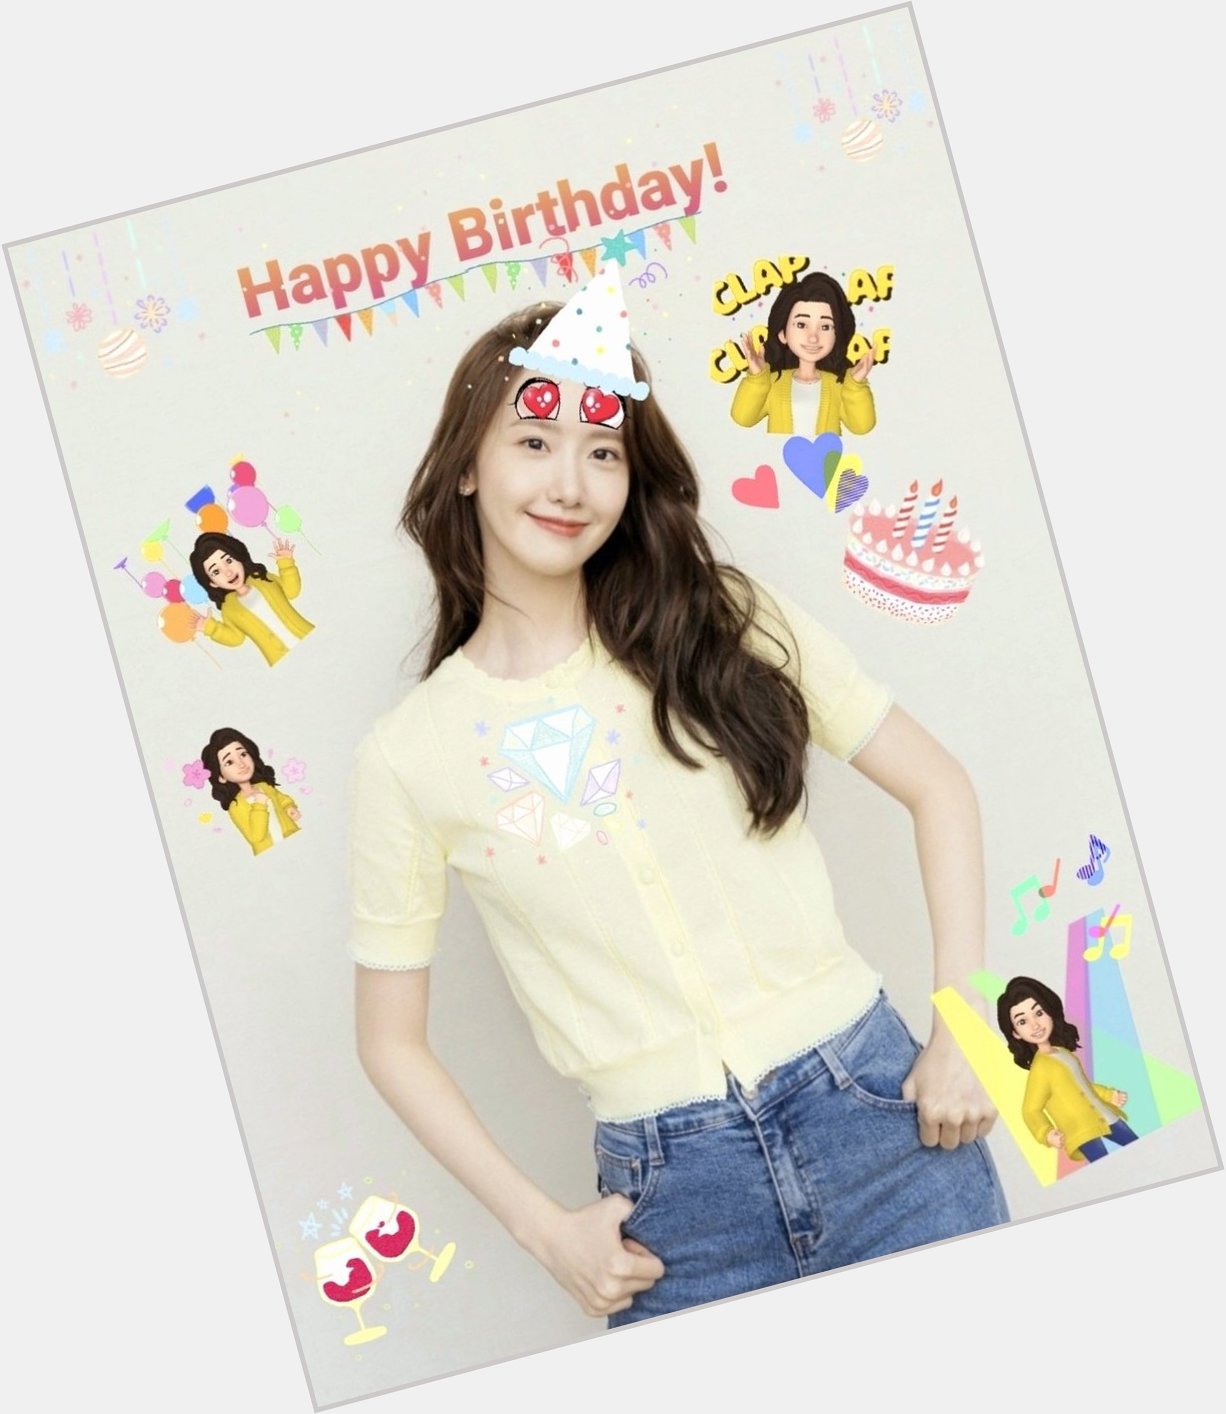  Happy birthday to Im Yoona! 